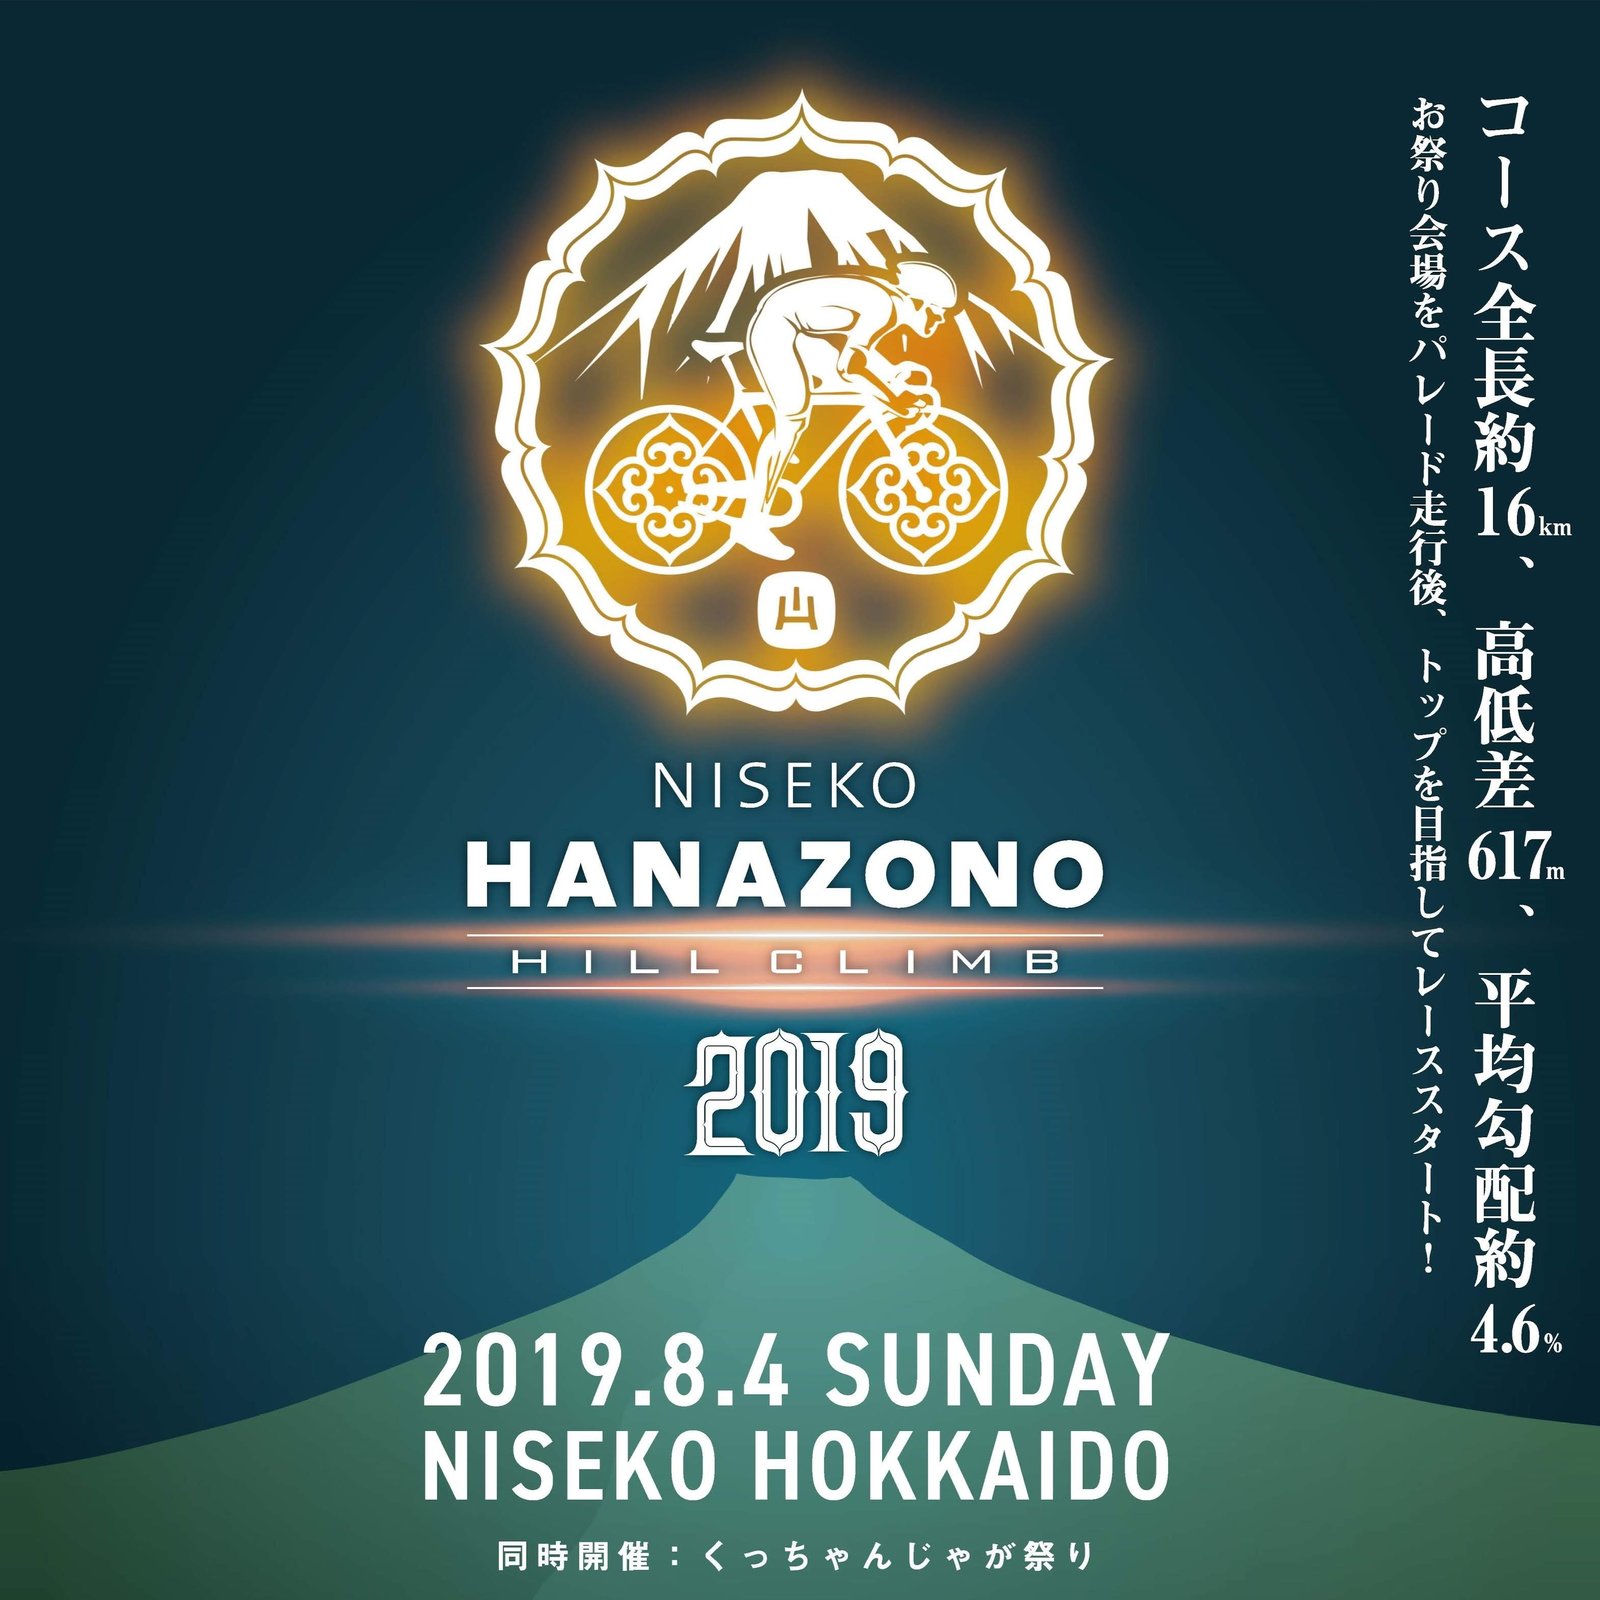 Hanazono Hill Climb 2019